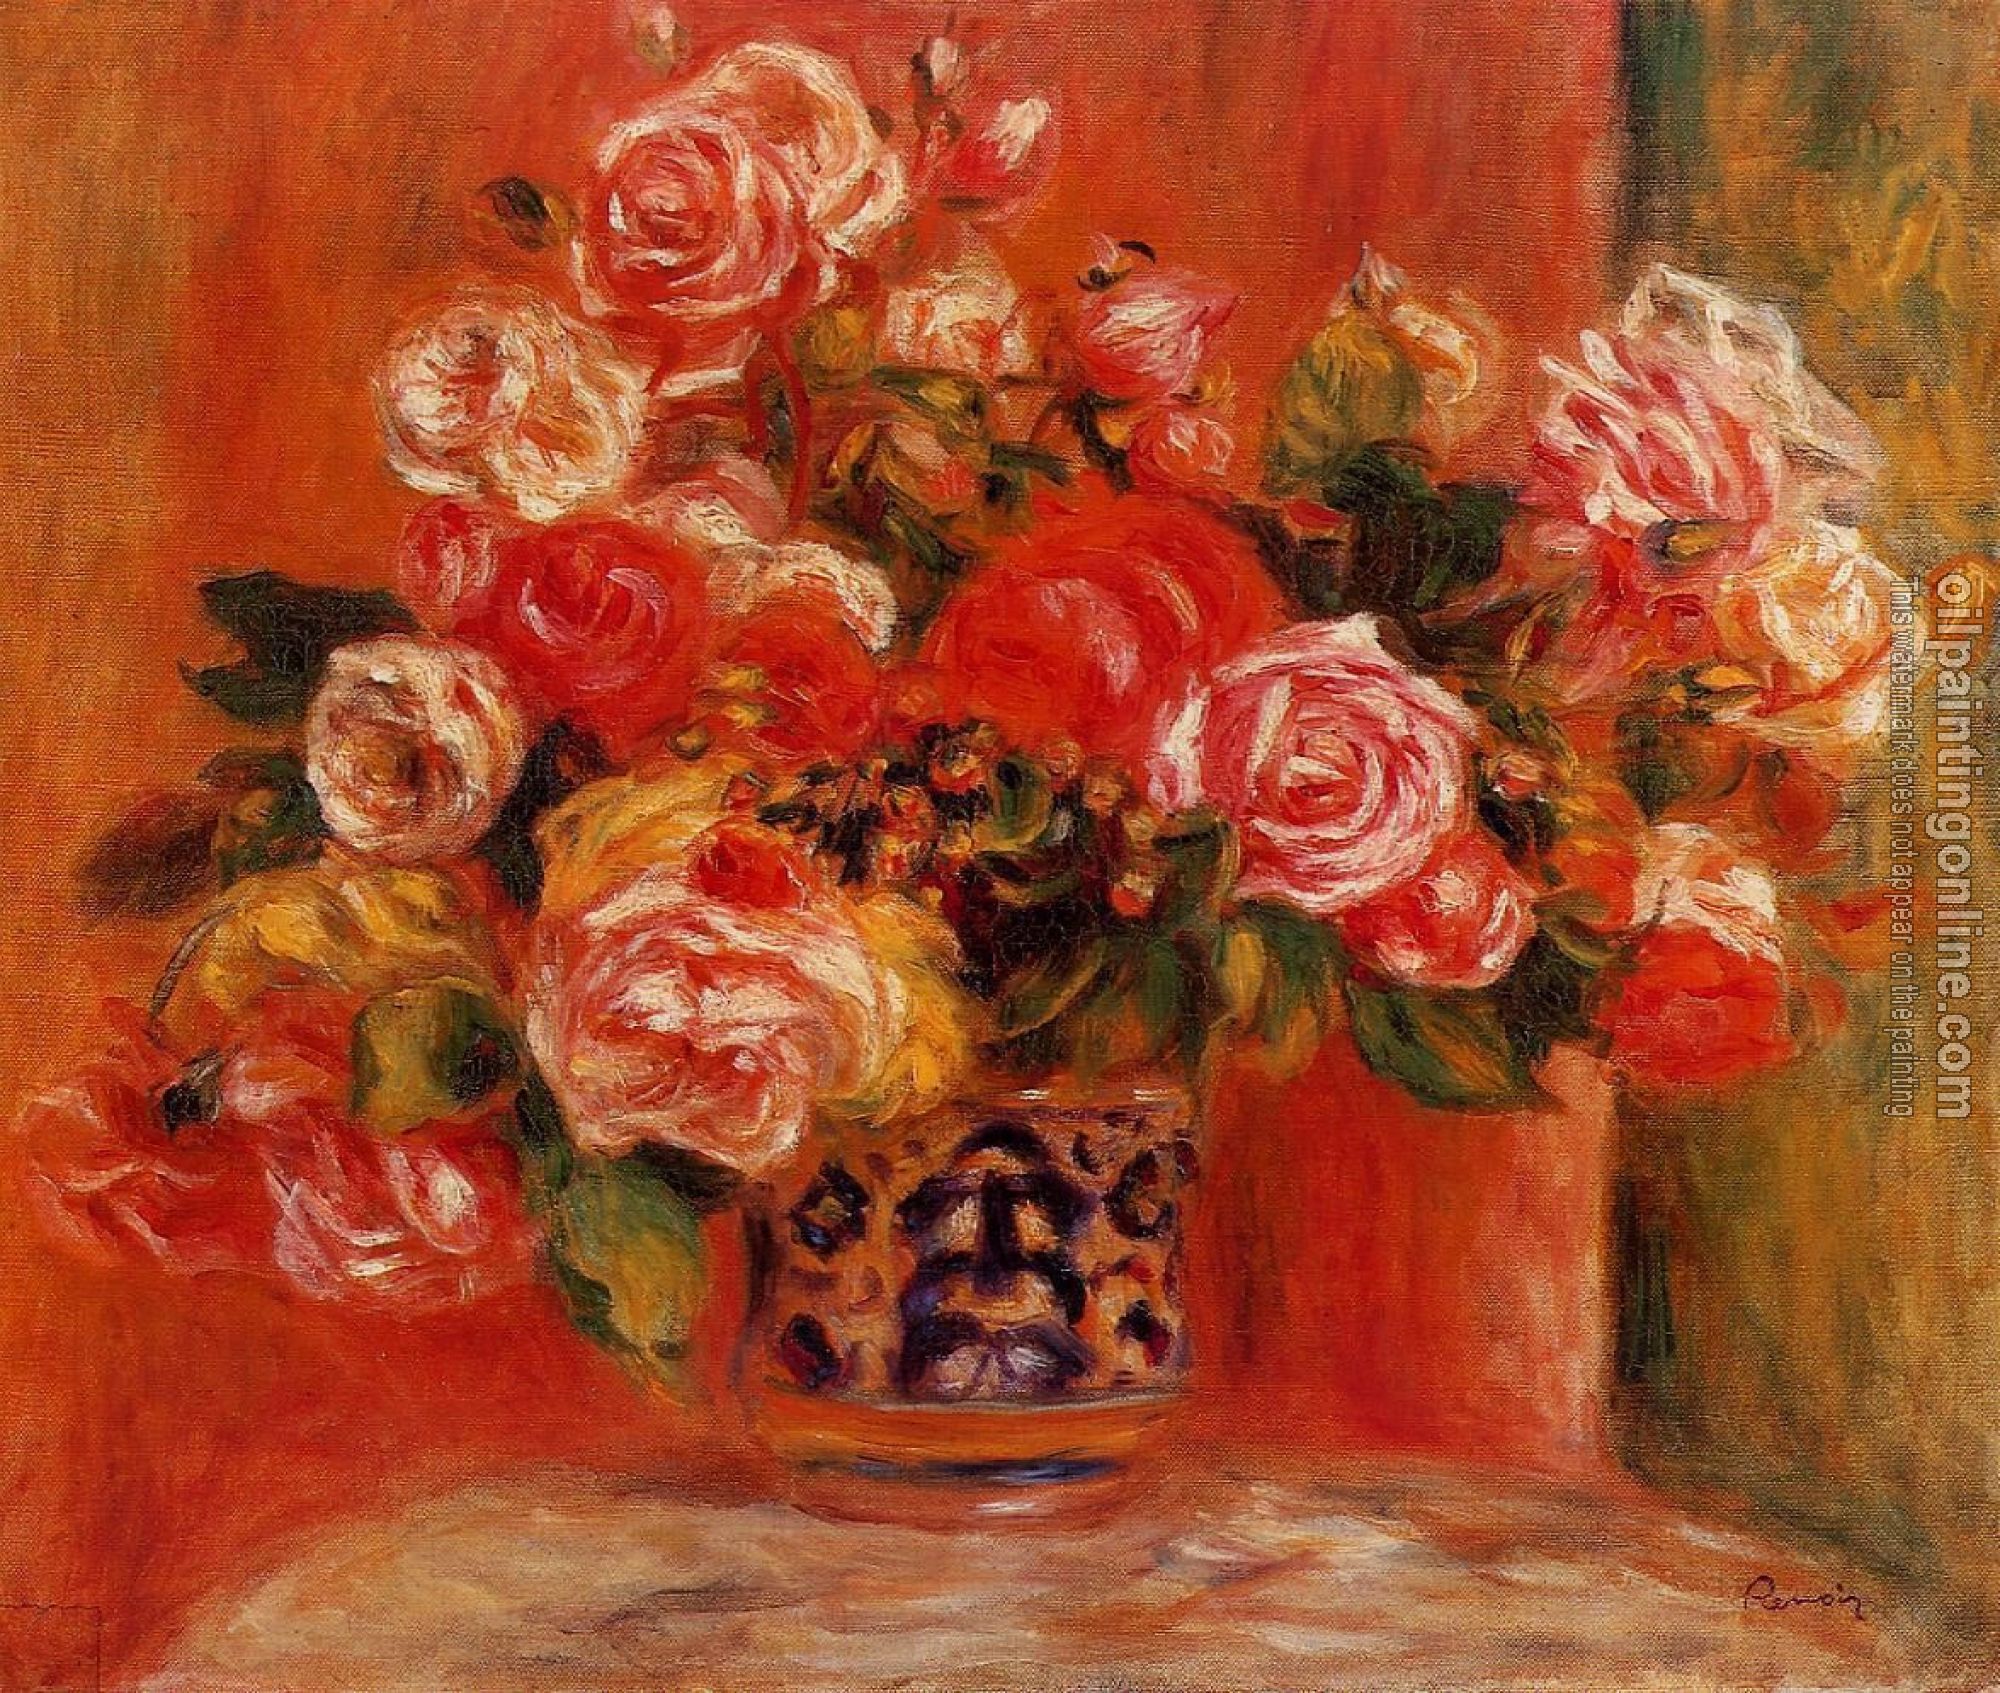 Renoir, Pierre Auguste - Roses in a Vase